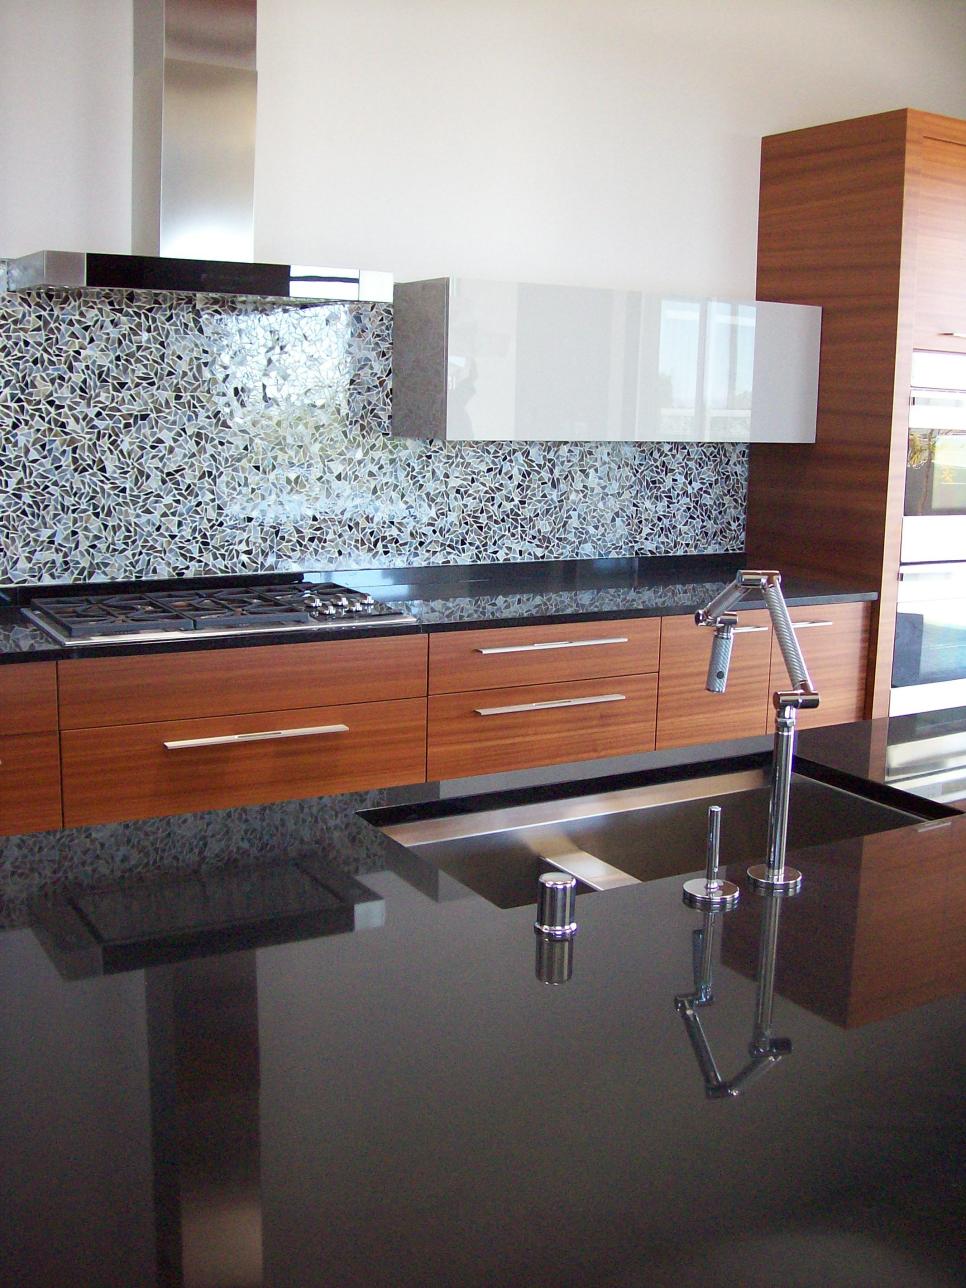 Contemporary Kitchen With Black Granite Countertops